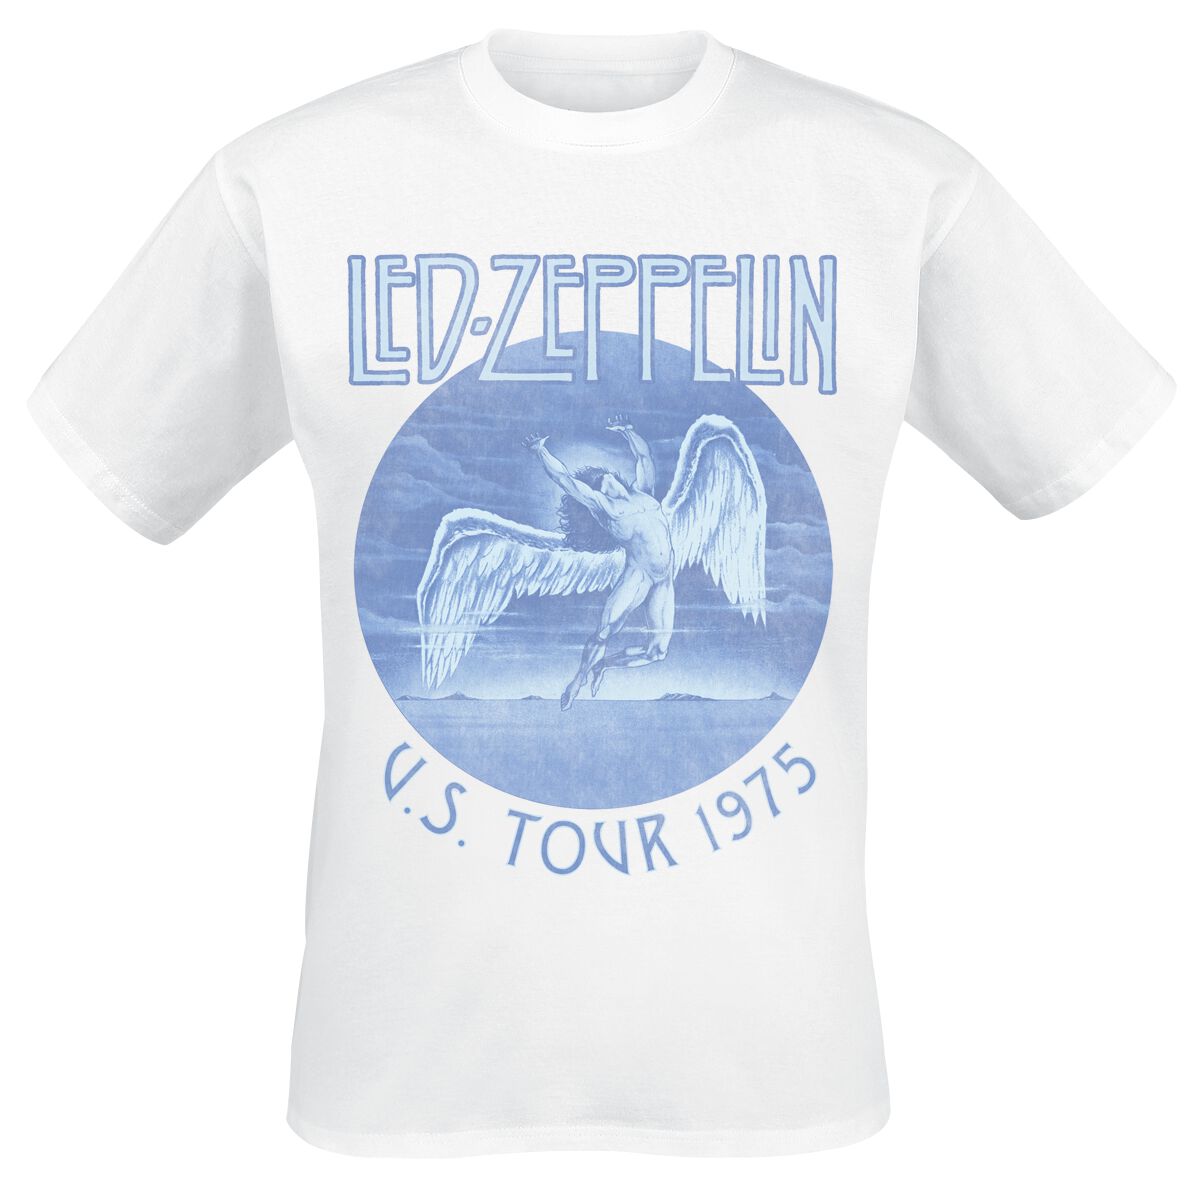 Led Zeppelin Tour 75 T-Shirt white